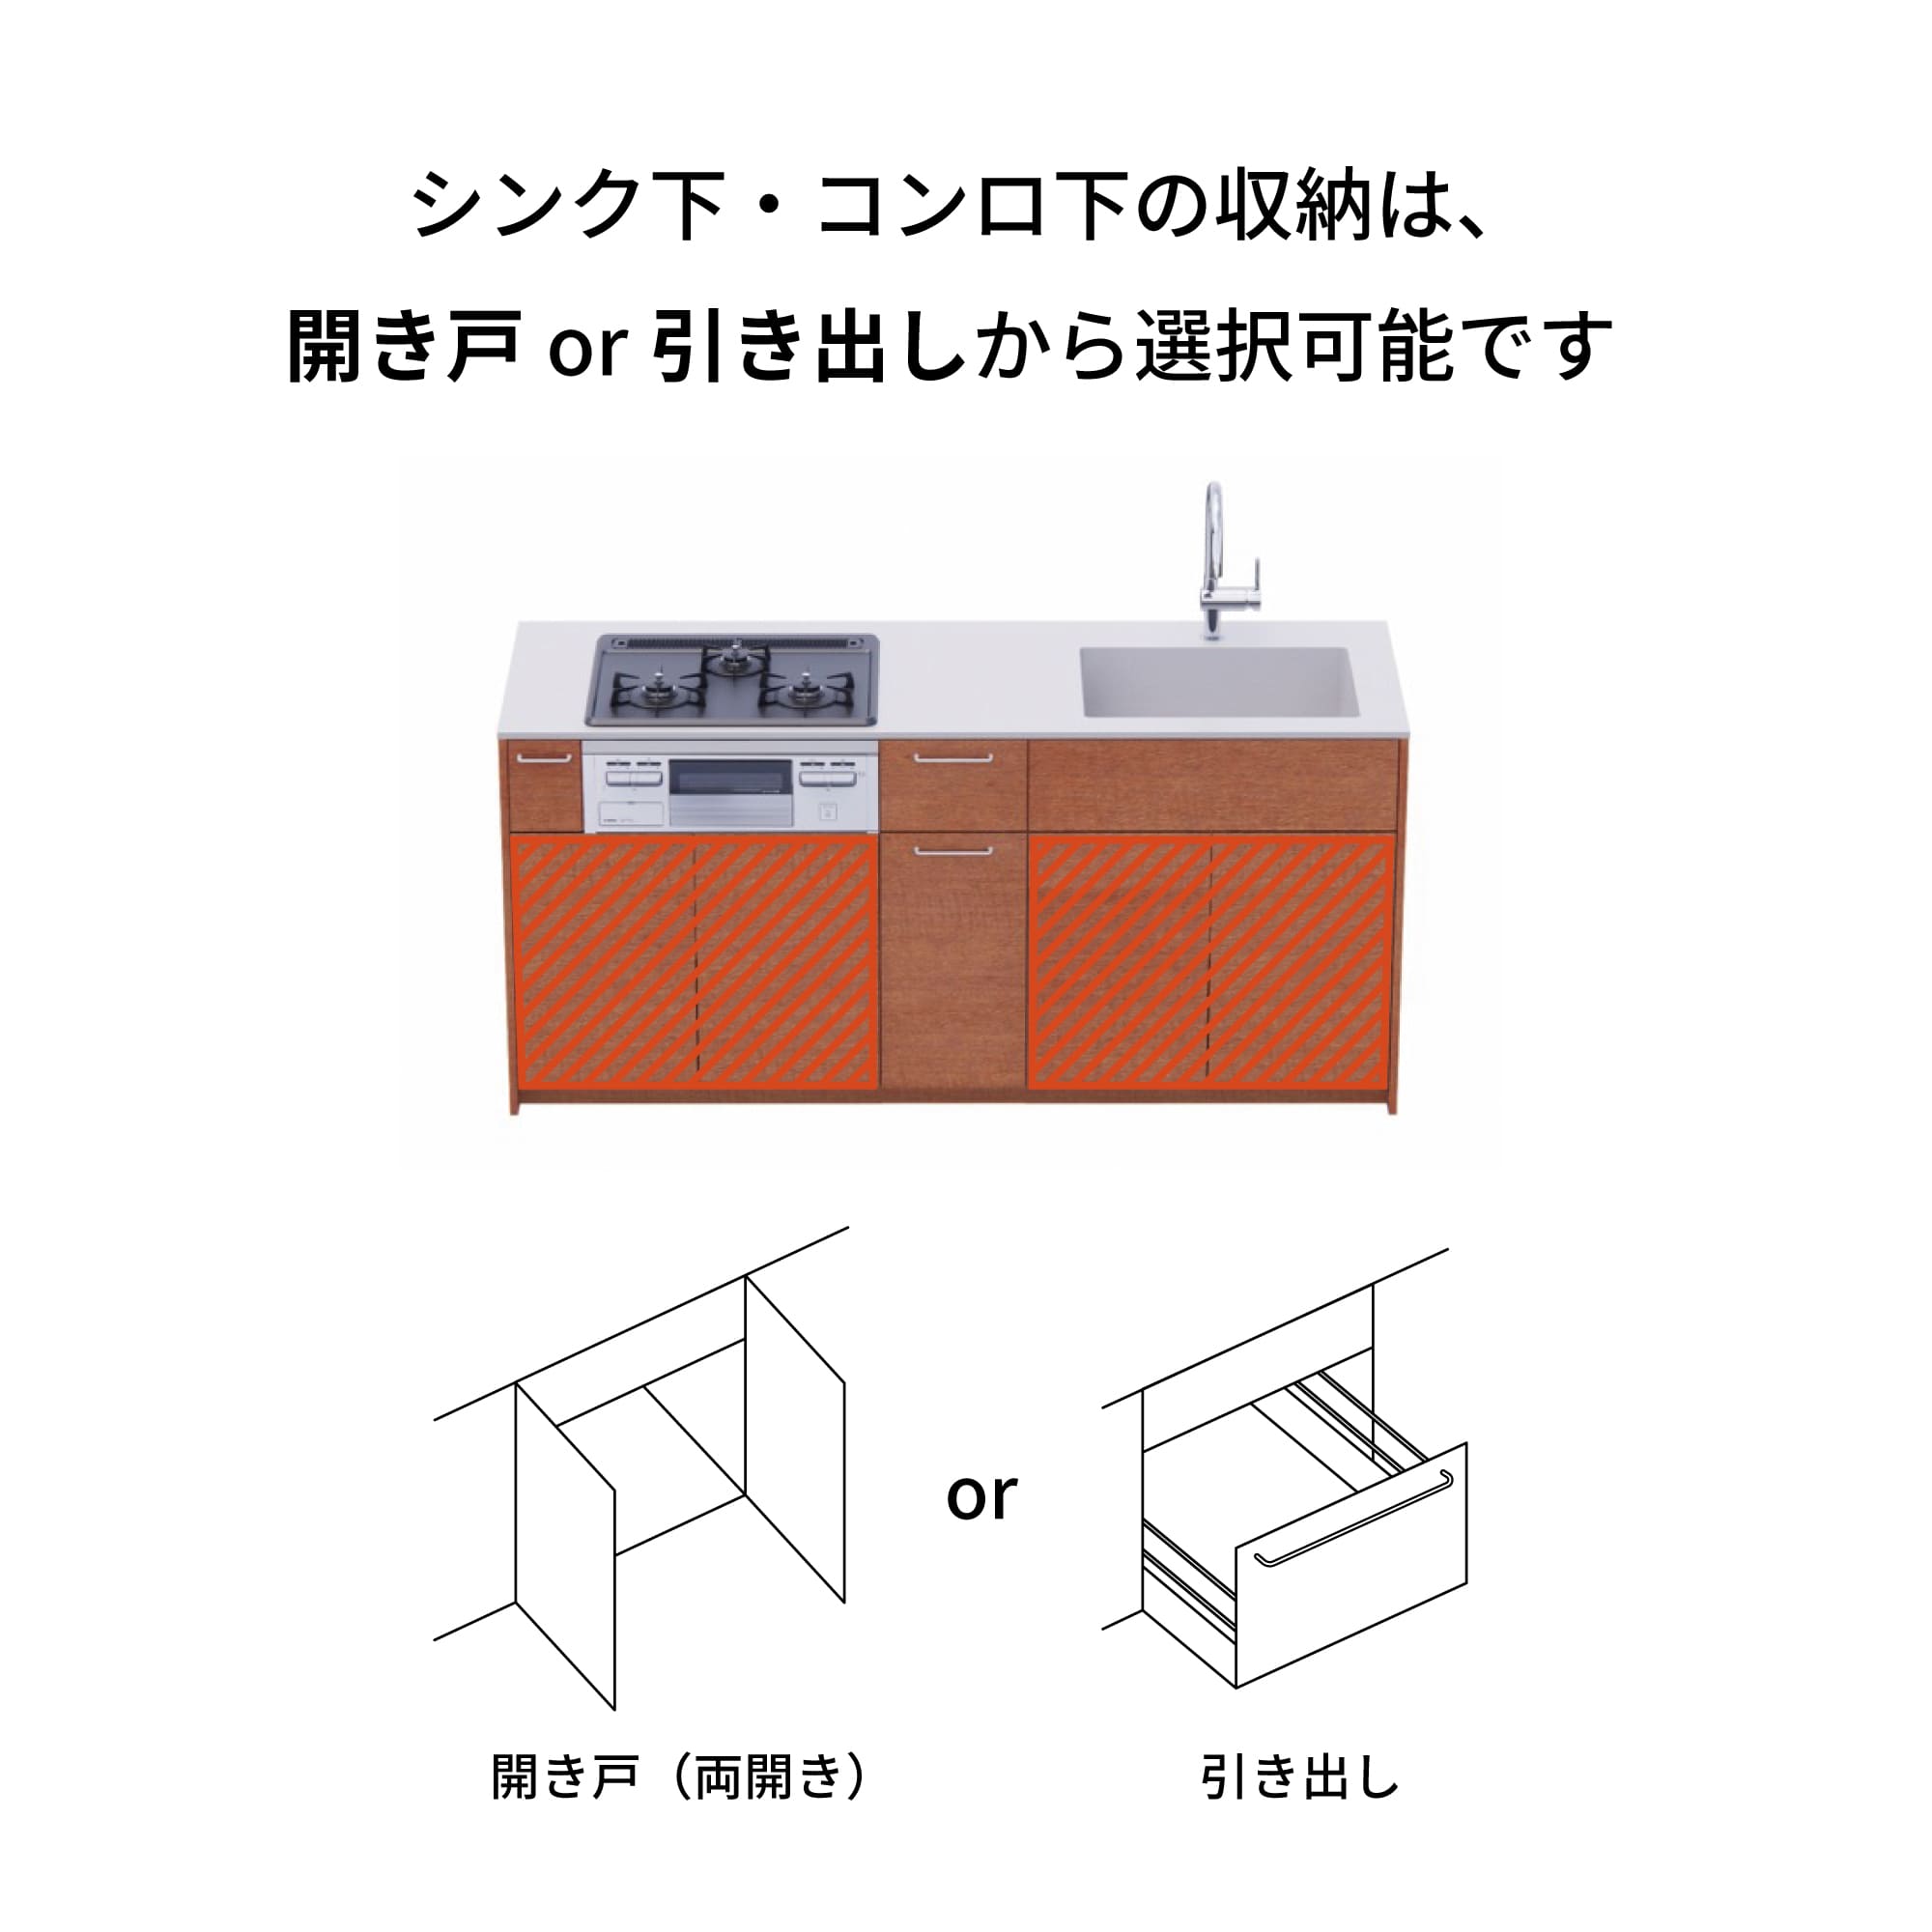 木製システムキッチン 対面型 W1990・コンロなし / オーブンなし / 食洗機なし KB-KC022-32-G183 引き出し下とコンロ下の収納が選択可能です